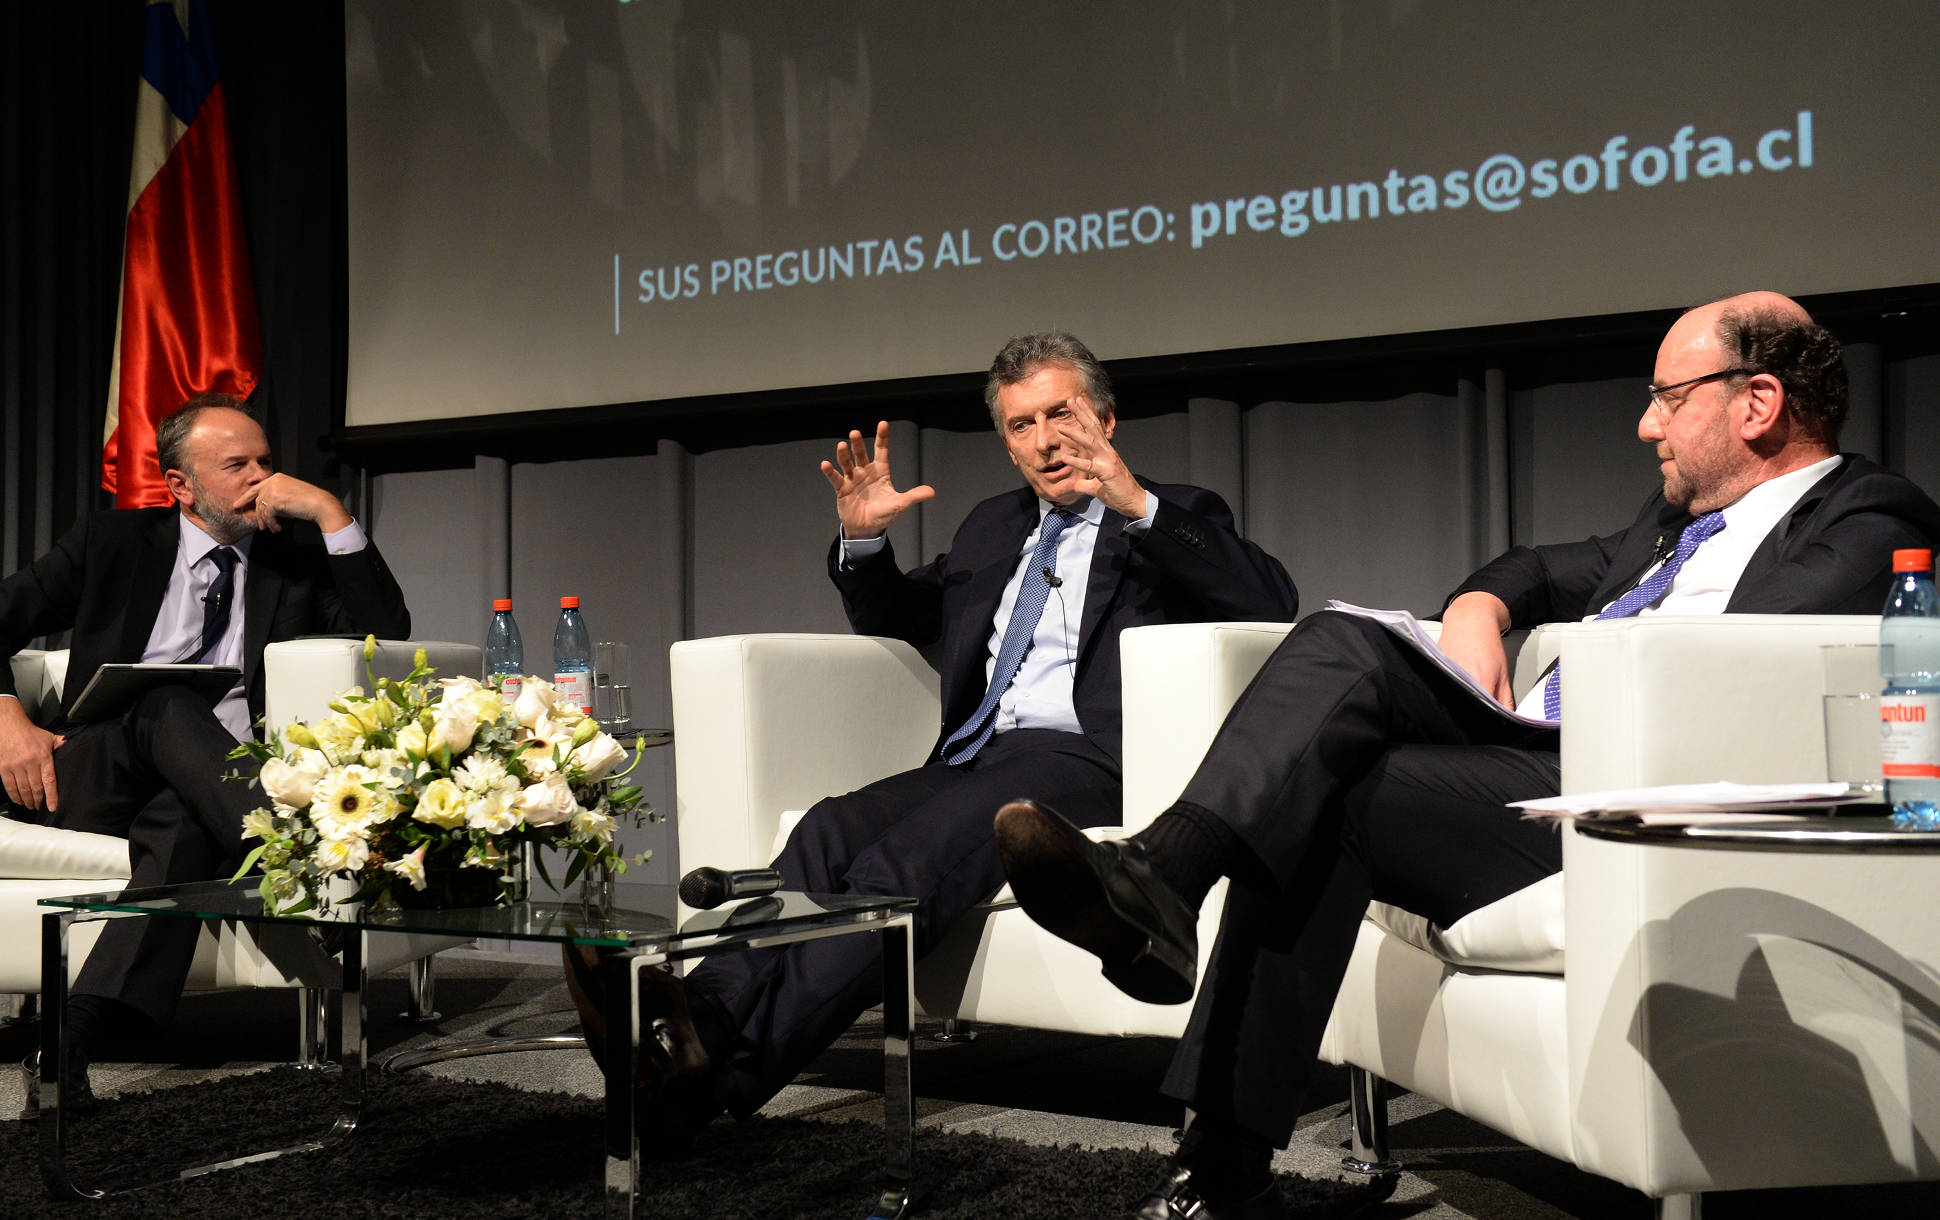 El Presidente se reunió en Chile con empresarios y con jóvenes emprendedores